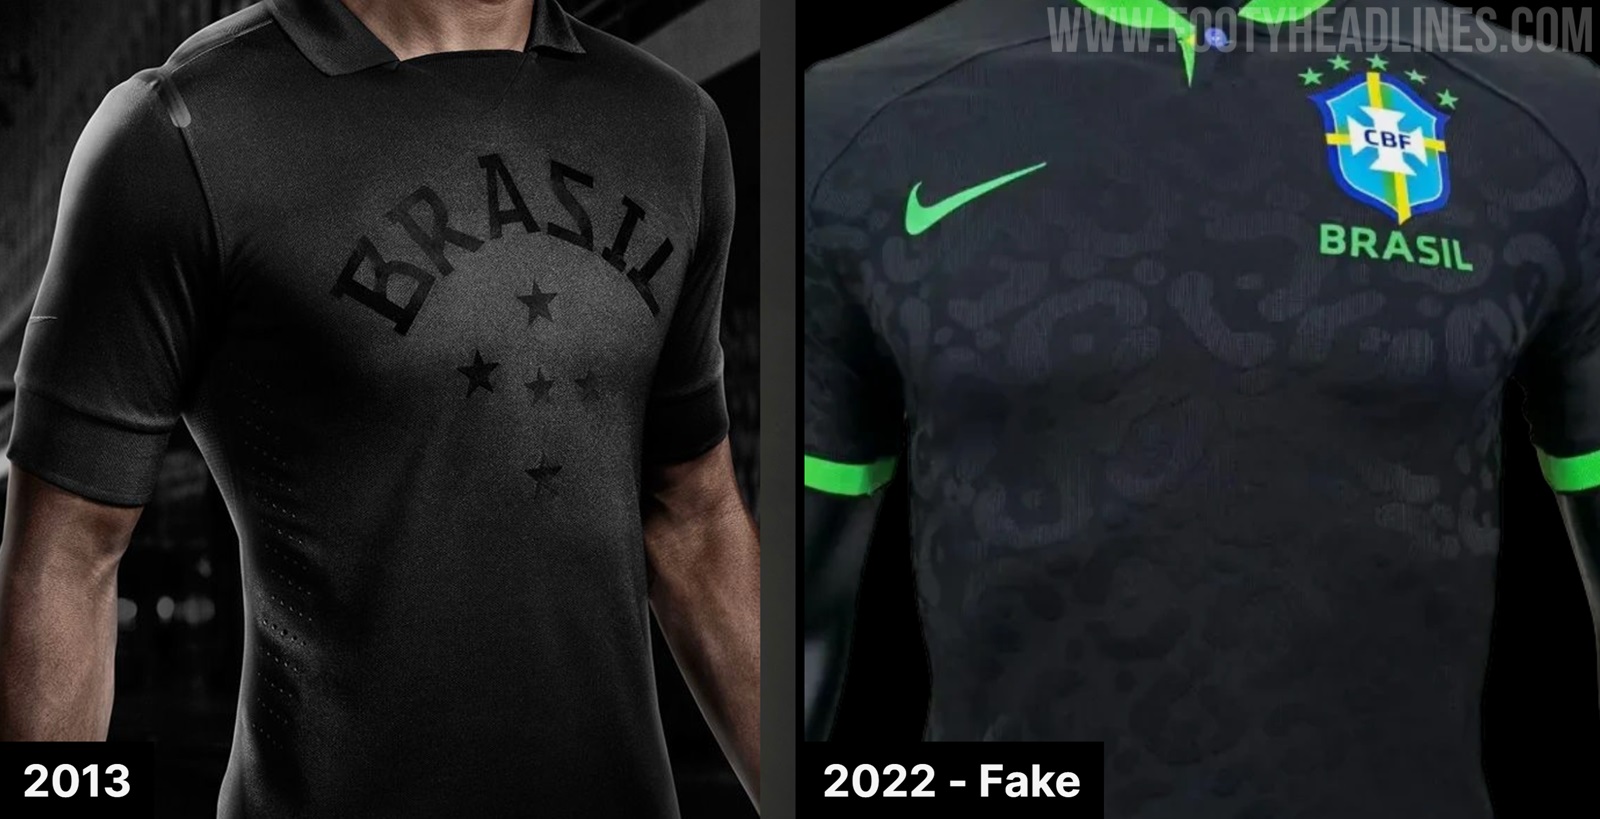 Brazil 2022 World Cup Goalkeeper Kit Released - Brazil Only Nike